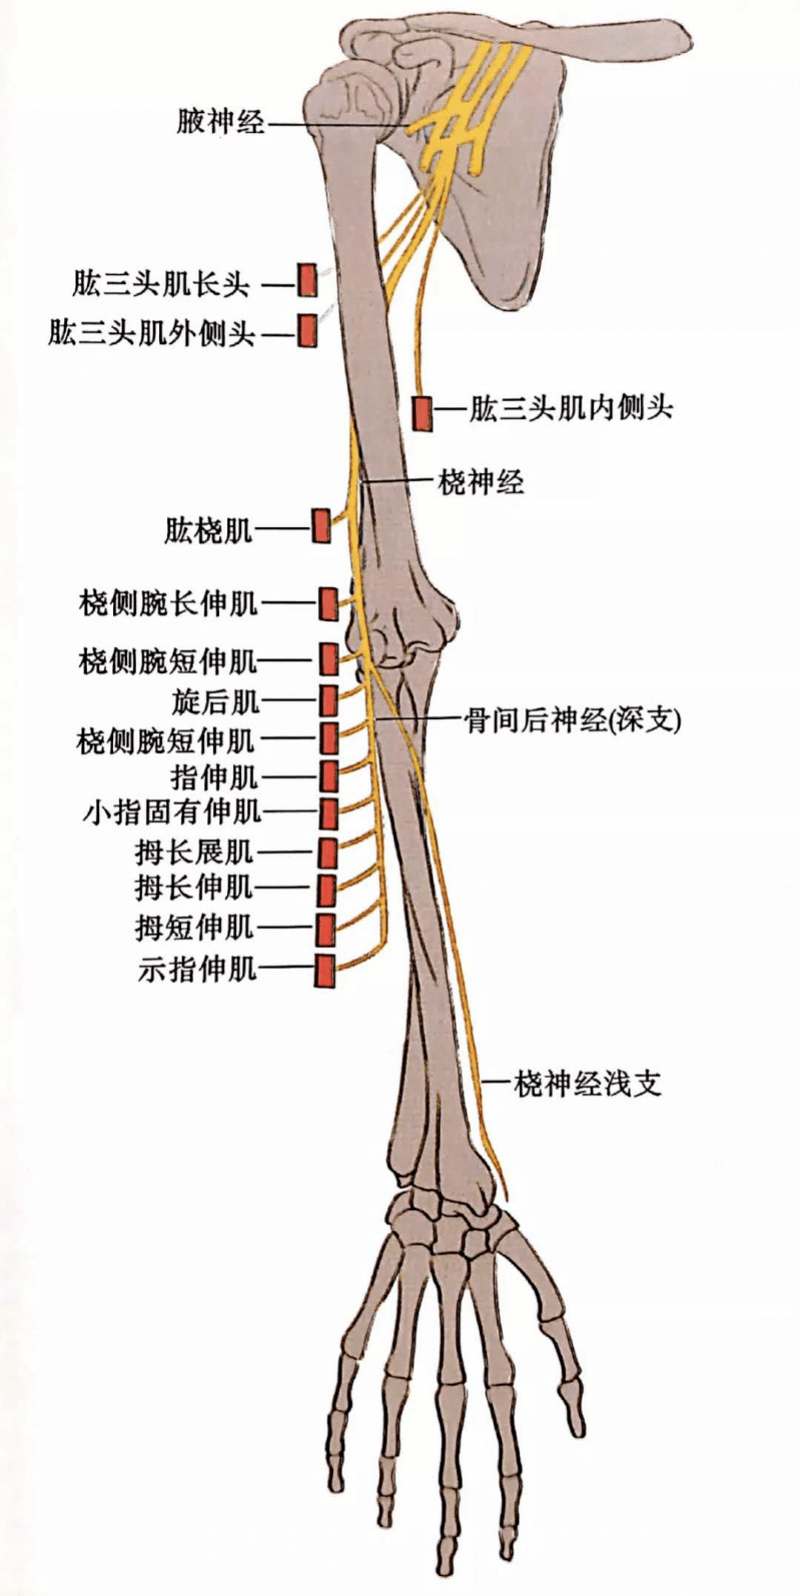 什么是桡神经损伤? 桡神经位于上臂,桡神经损伤是指上臂神经受损.